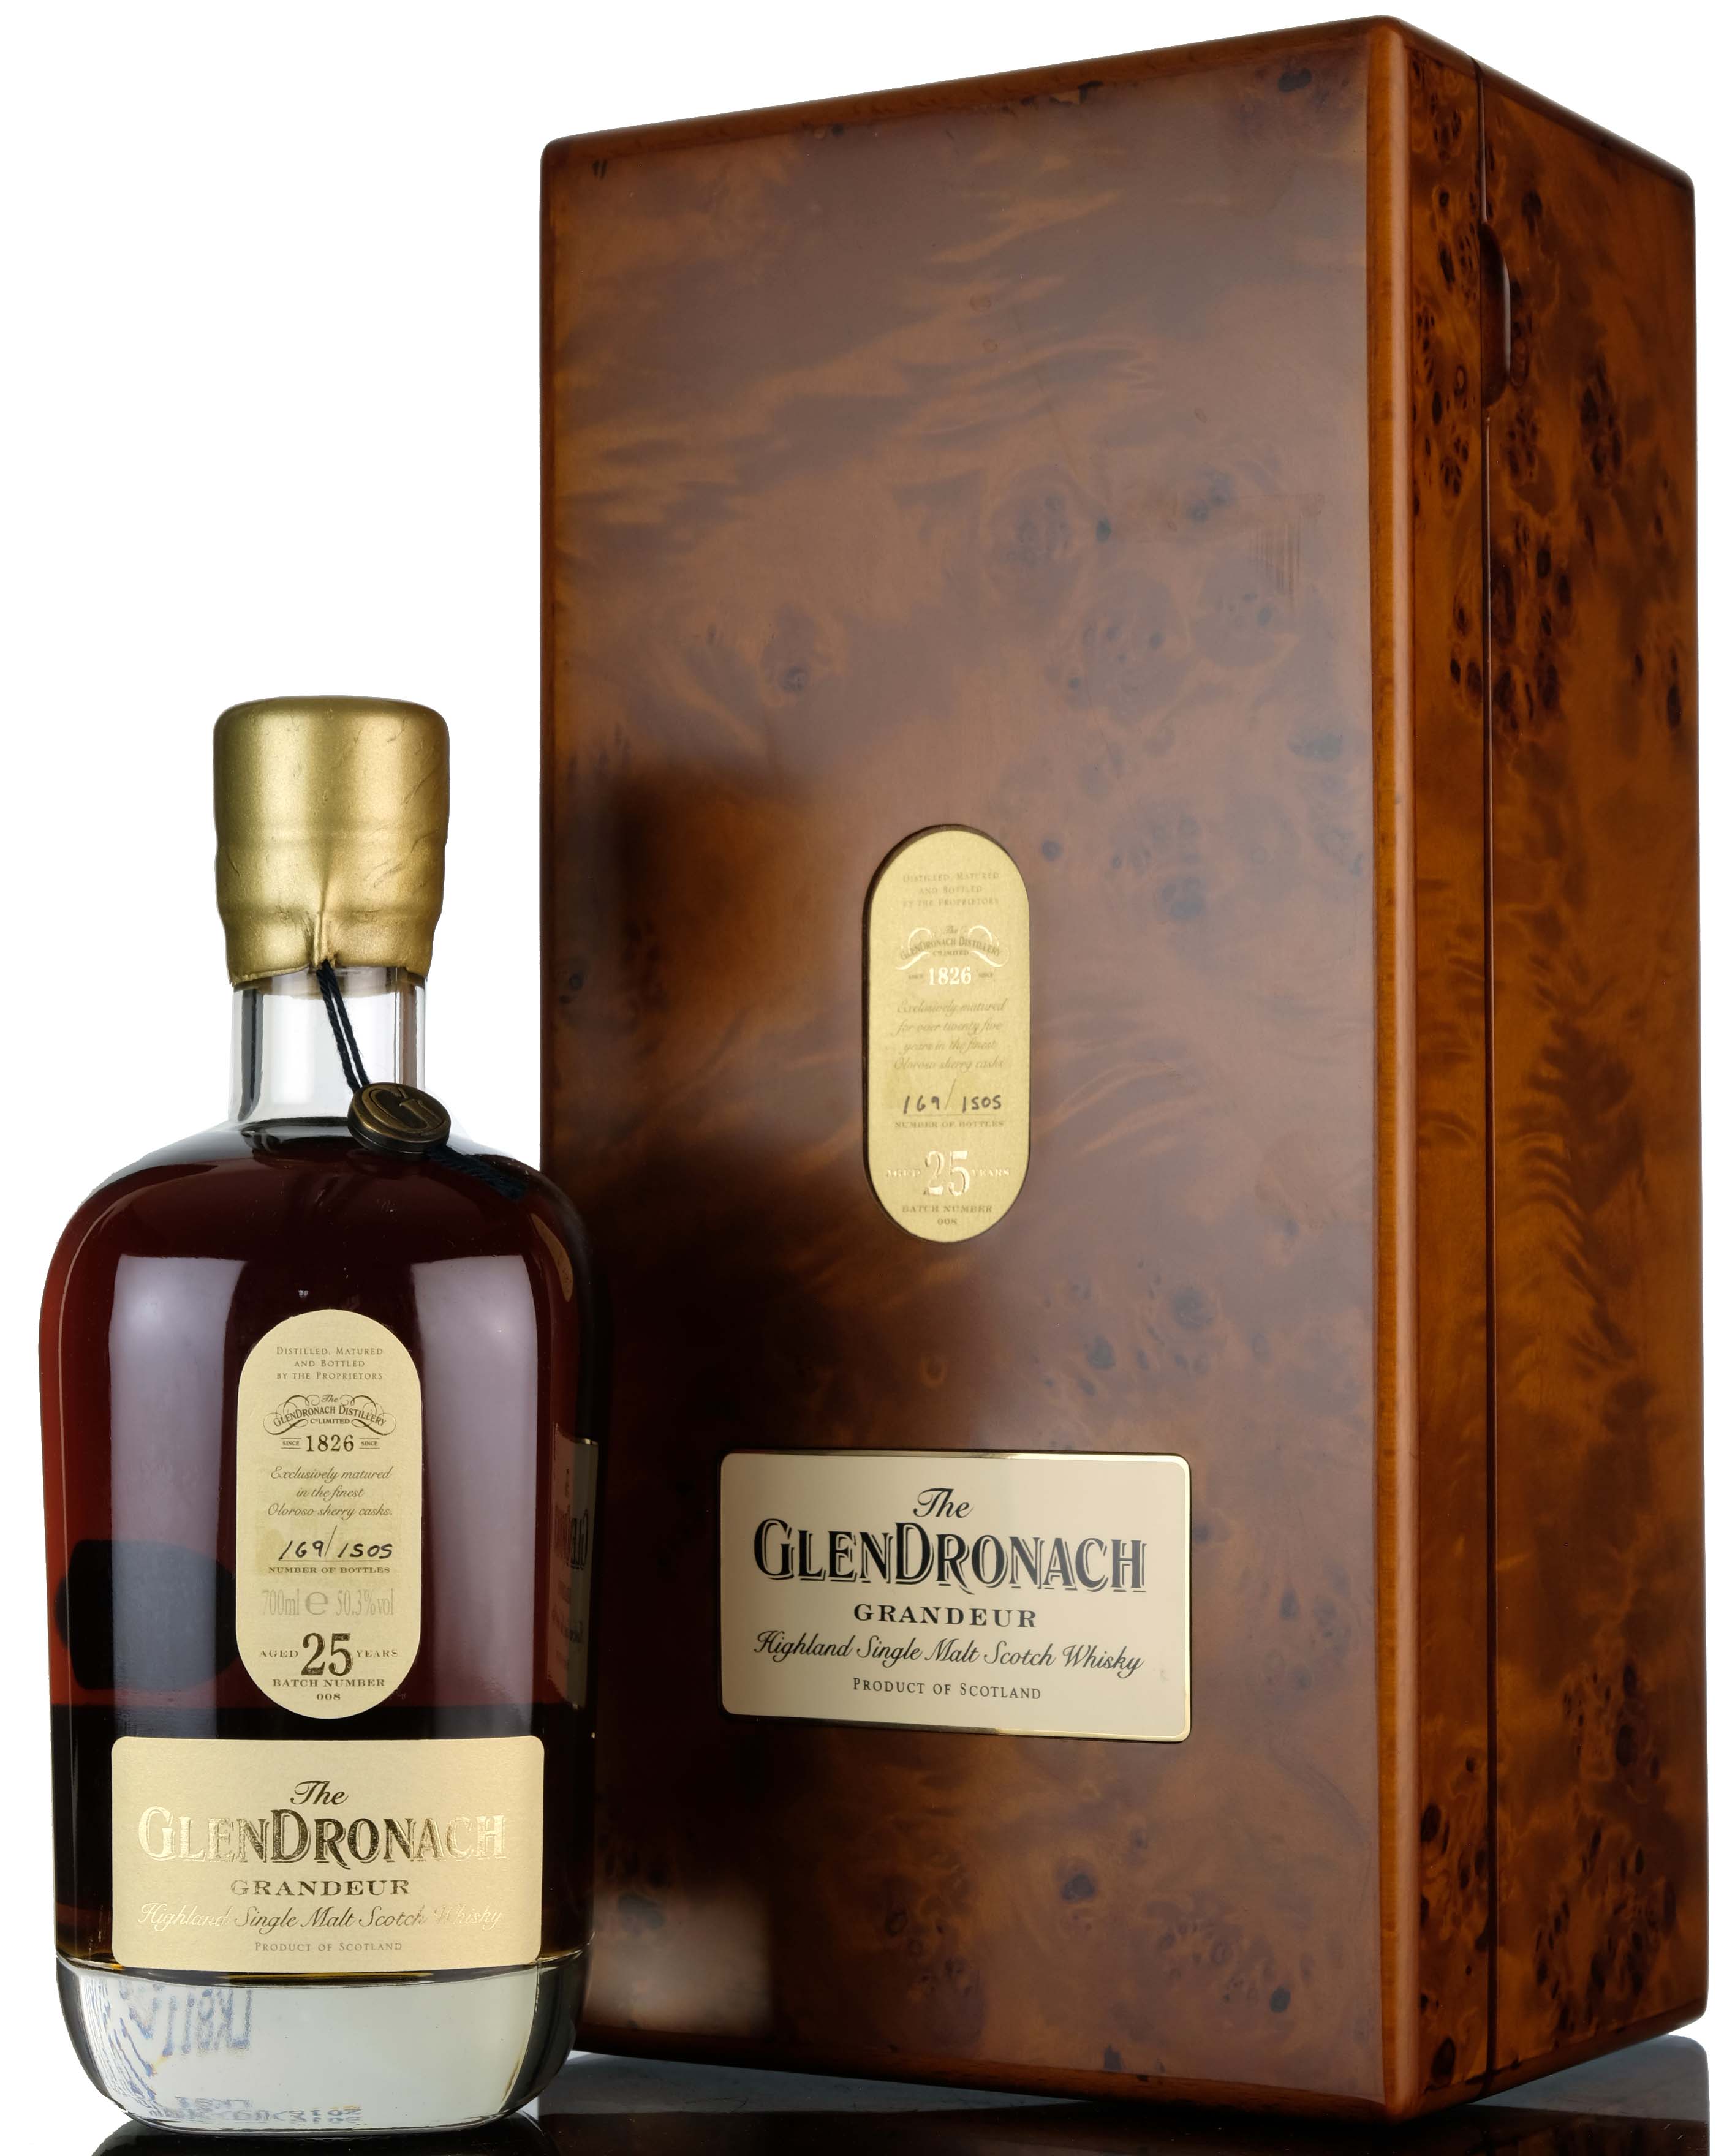 Glendronach 25 Year Old - Grandeur Batch 8